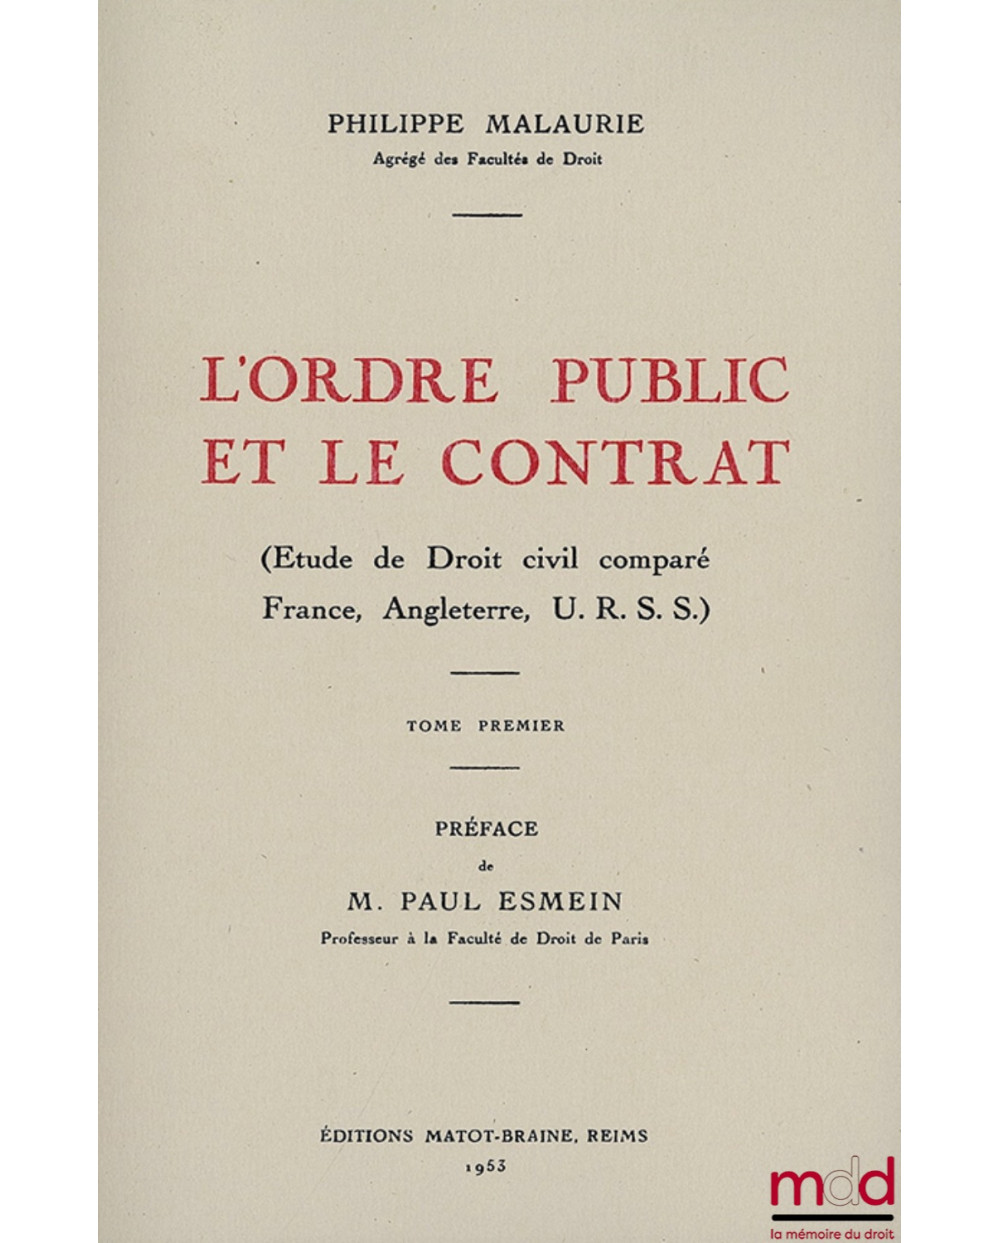 L’ORDRE PUBLIC ET LE CONTRAT (Études de Droit civil comparé France, Angleterre, U.R.S.S.), Préface de Paul Esmein